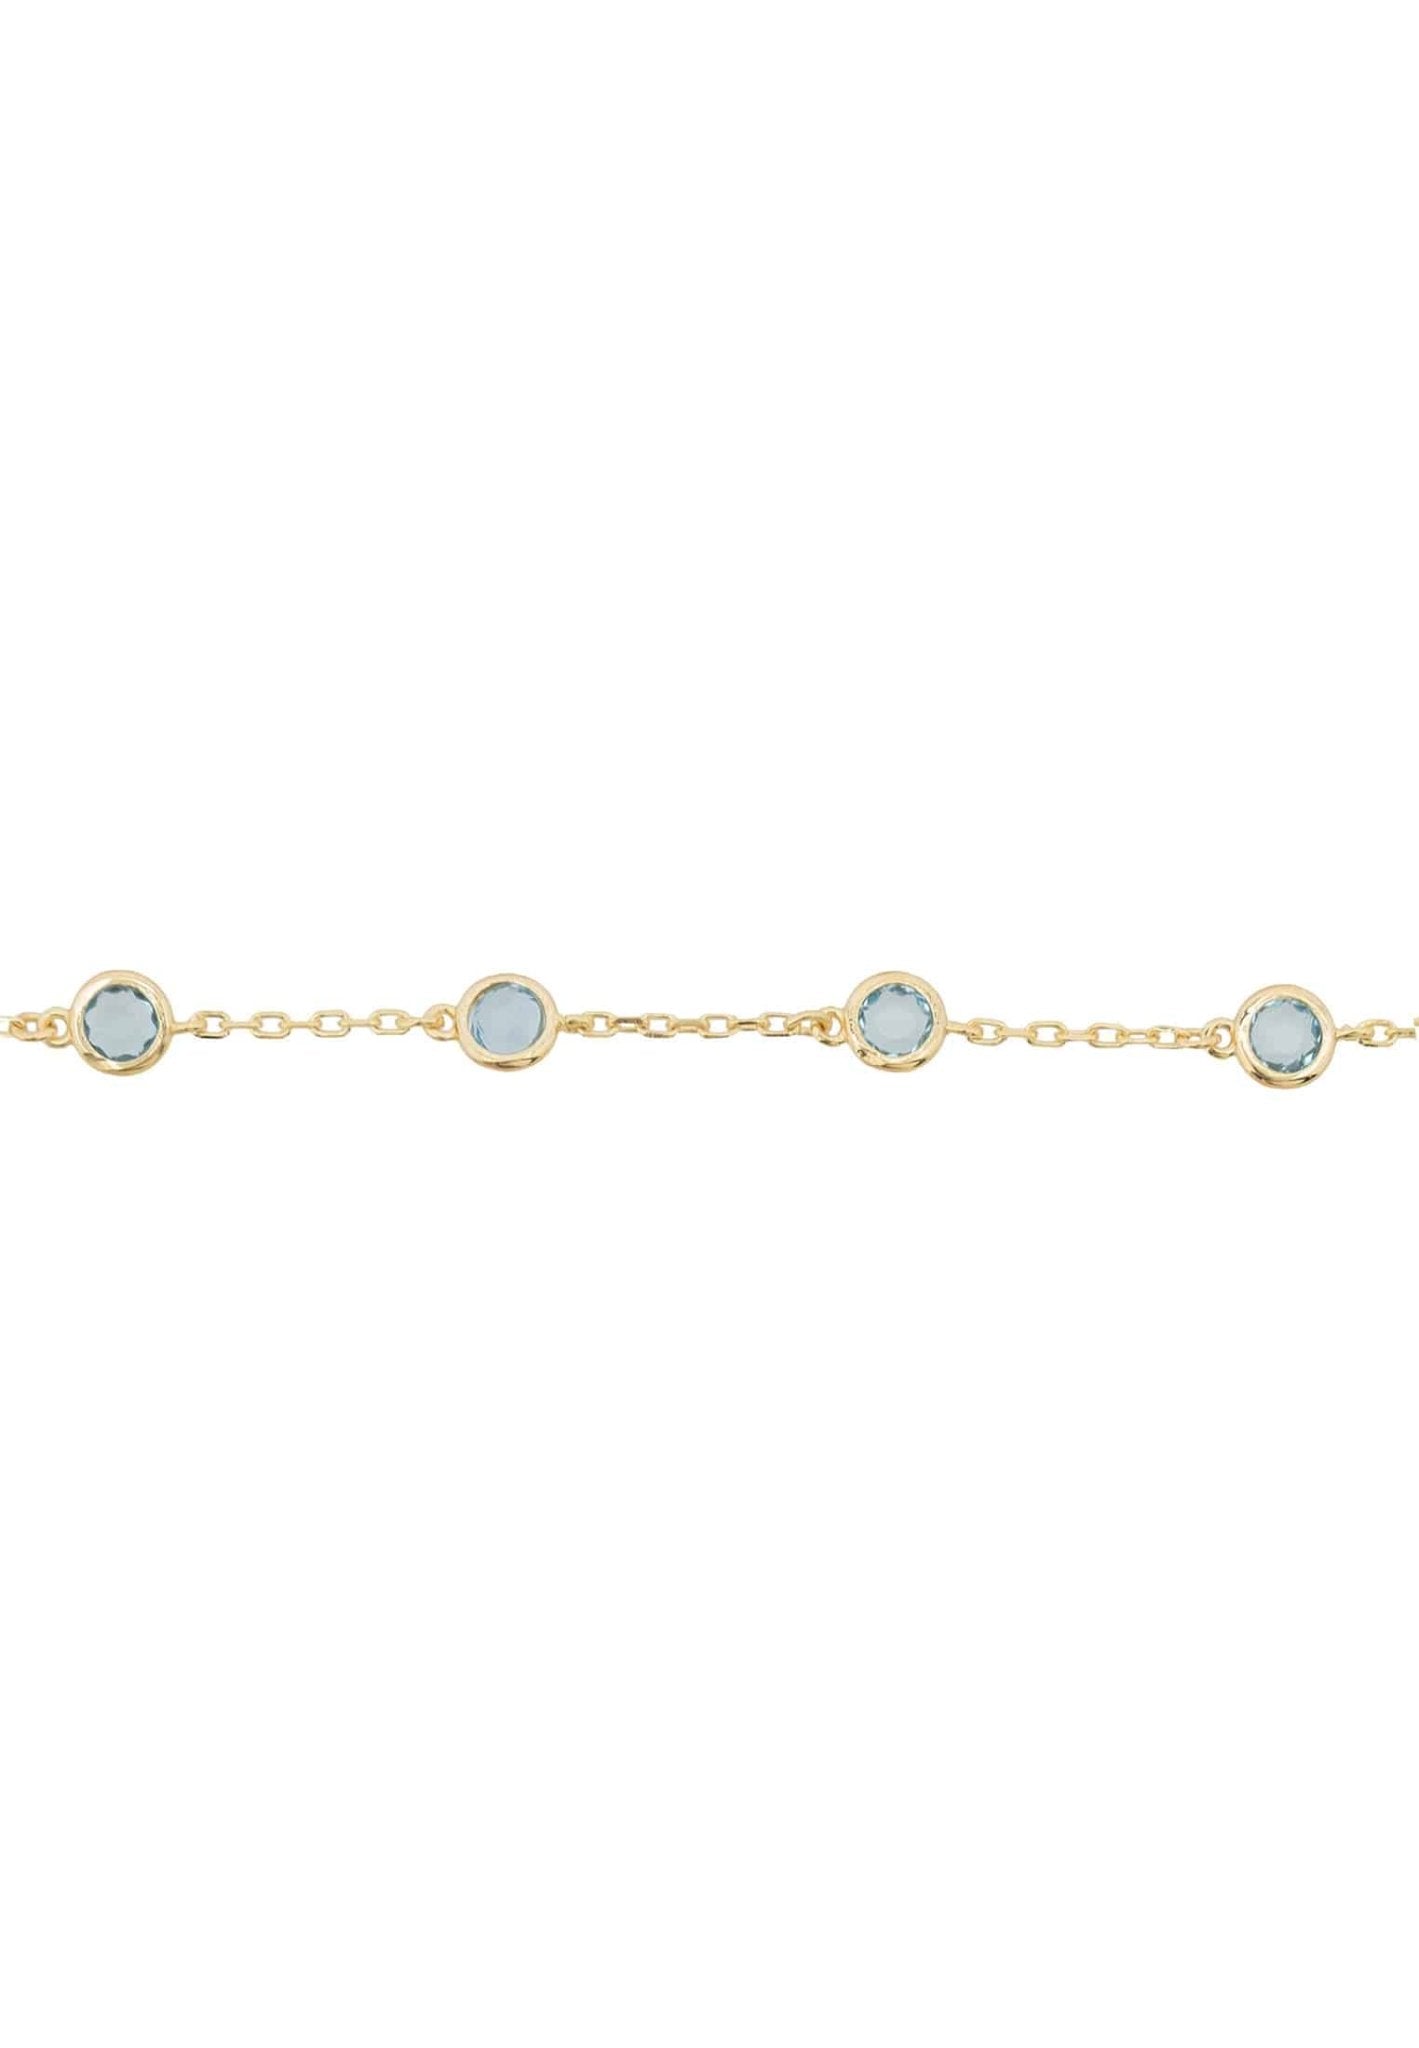 Palermo Bracelet Gold Blue Topaz - LATELITA Bracelets